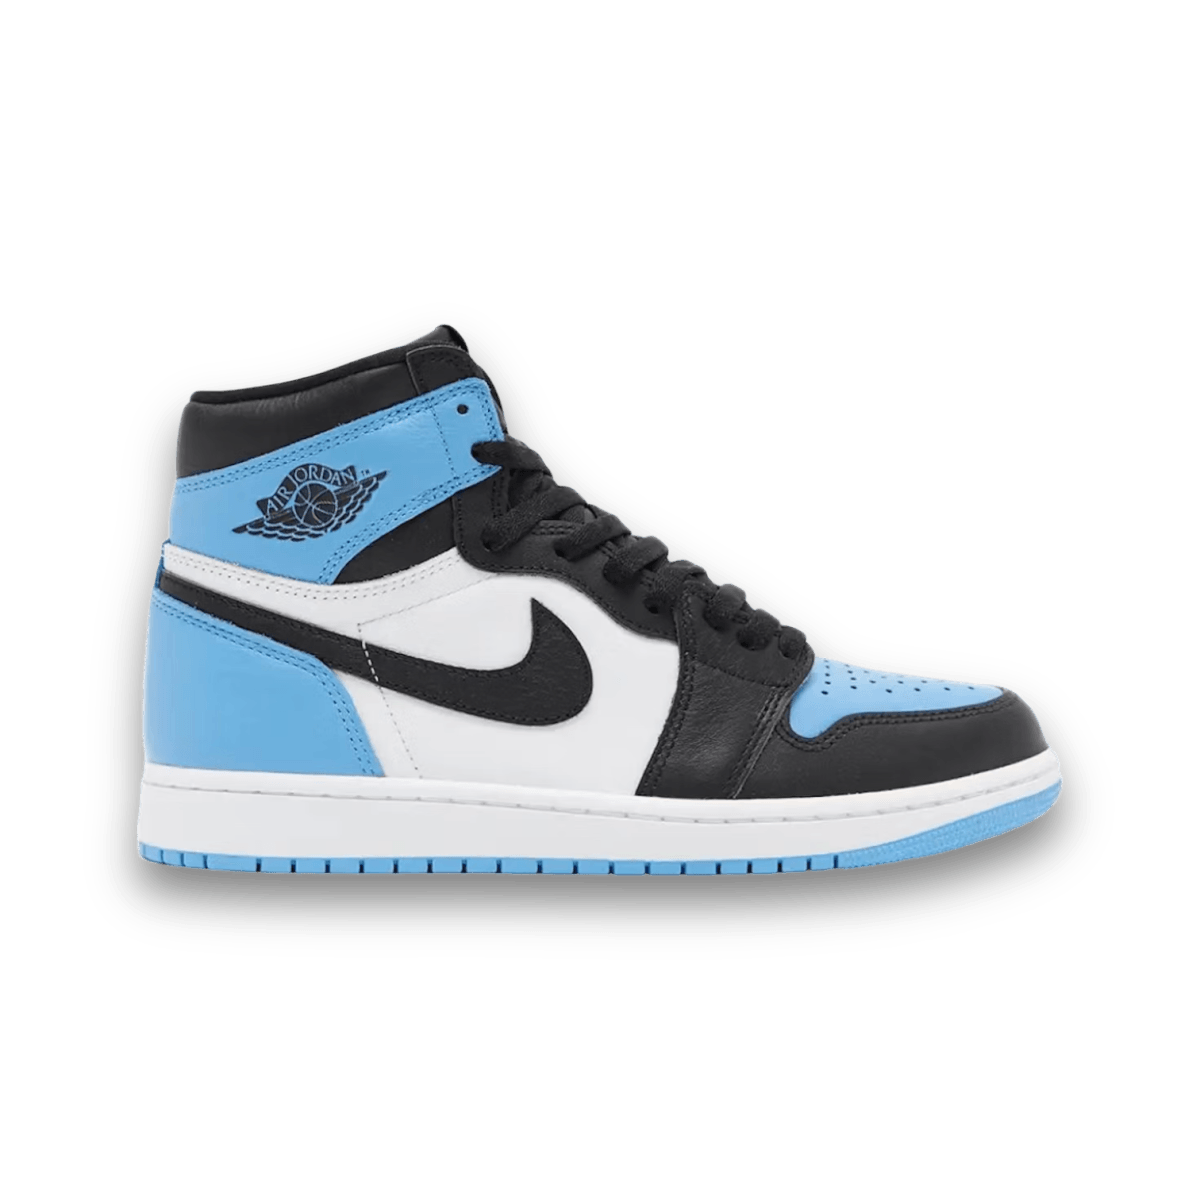 Jordan 1 Retro High OG UNC Toe - High Sneaker - Jawns on Fire Sneakers & Streetwear